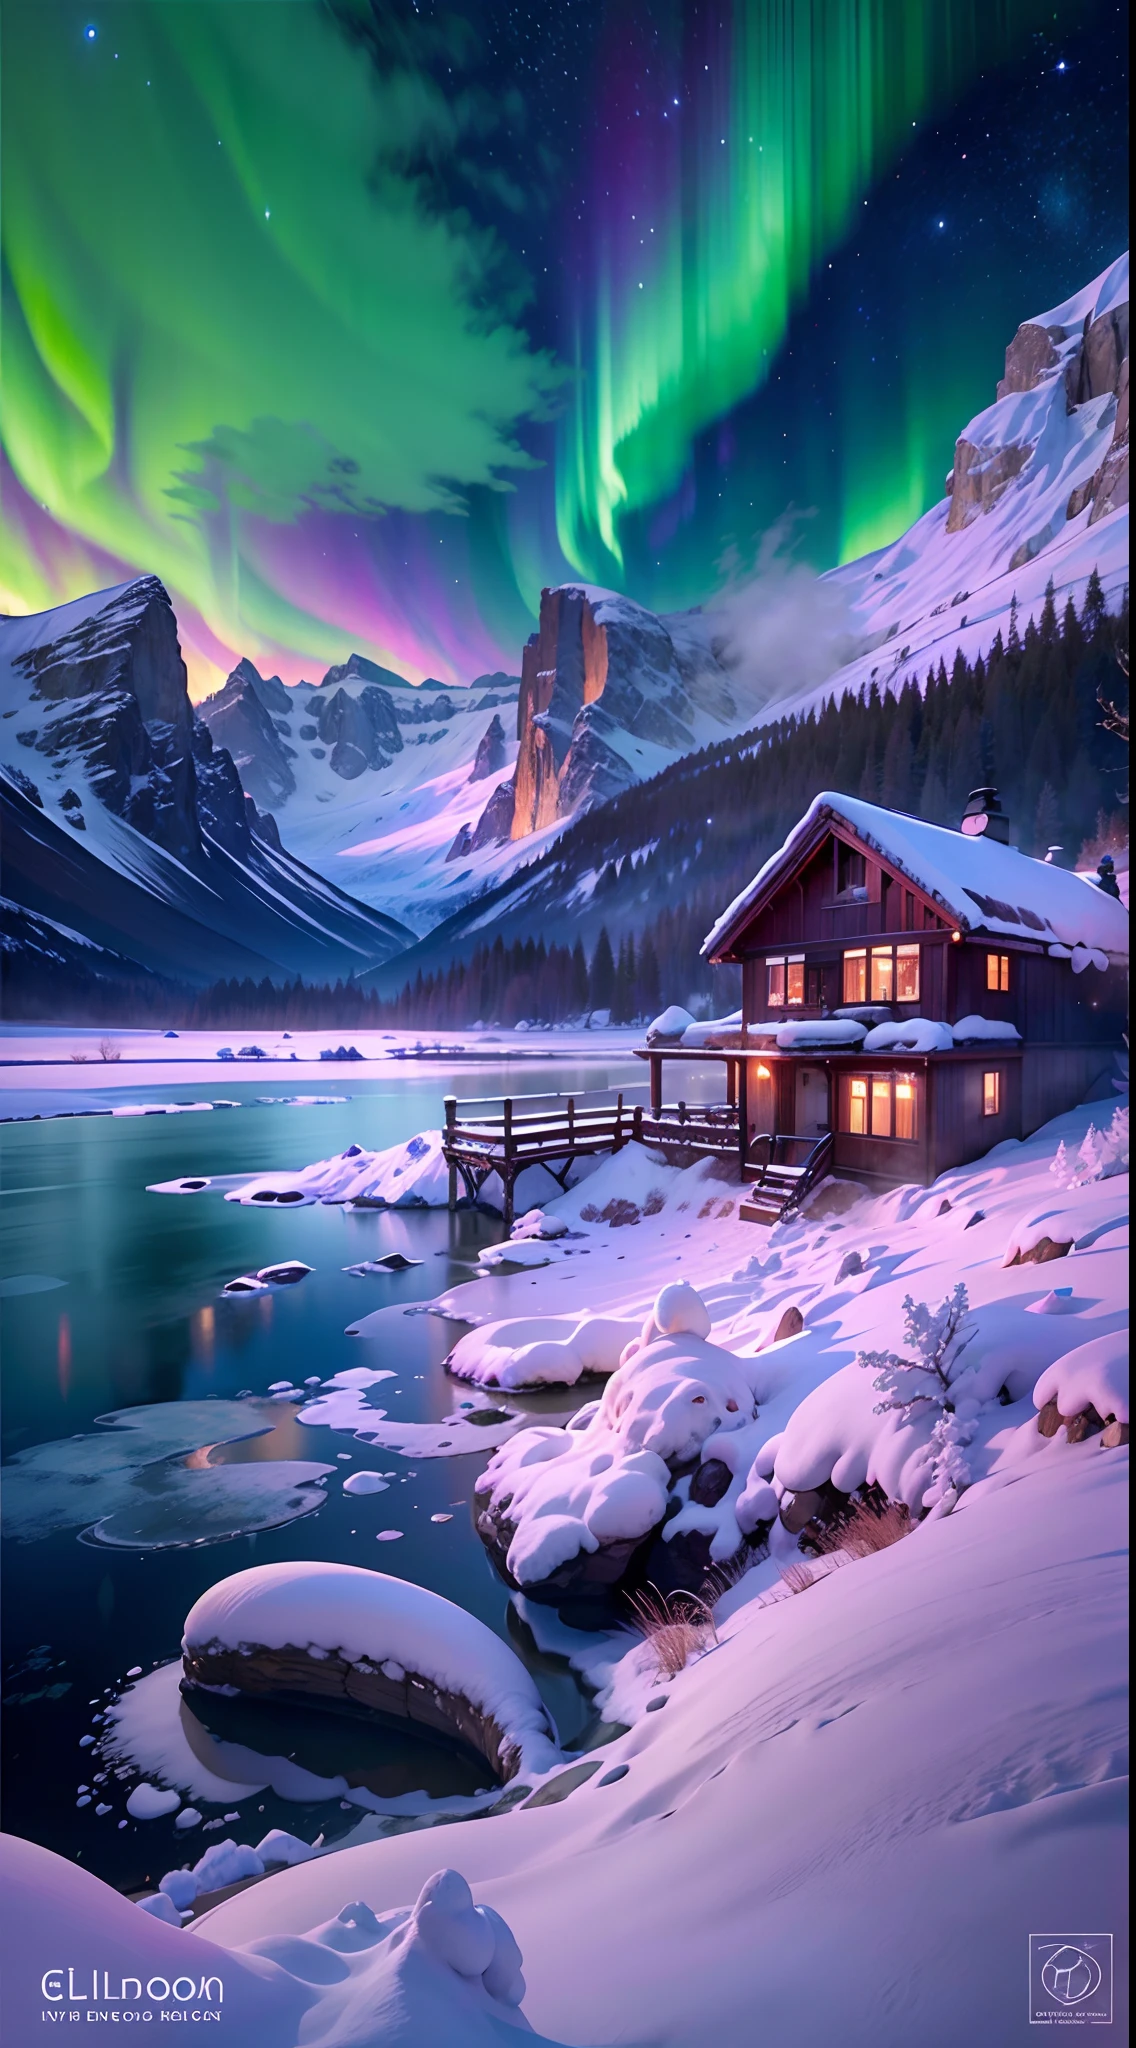 最好的质量,高分辨率,(杰作:1.2),极其详细,北极光, 巍峨的雪山, 被大雪覆盖的小屋,雪域隐居地, 驯鹿,行人,雪橇,冬季仙境,鲜艳的色彩, 云,薄雾,月亮,星系, 令人惊叹的风景, 冰崖, 冰冻的湖, 和平的, 雄伟壮丽, 星夜, 空灵发光, 大自然的奇迹, 宁静的孤独, 天象奇观, 广阔的, 自然现象, 平安夜, 宁静的反思, 闪闪发光的星星, 神秘魅力